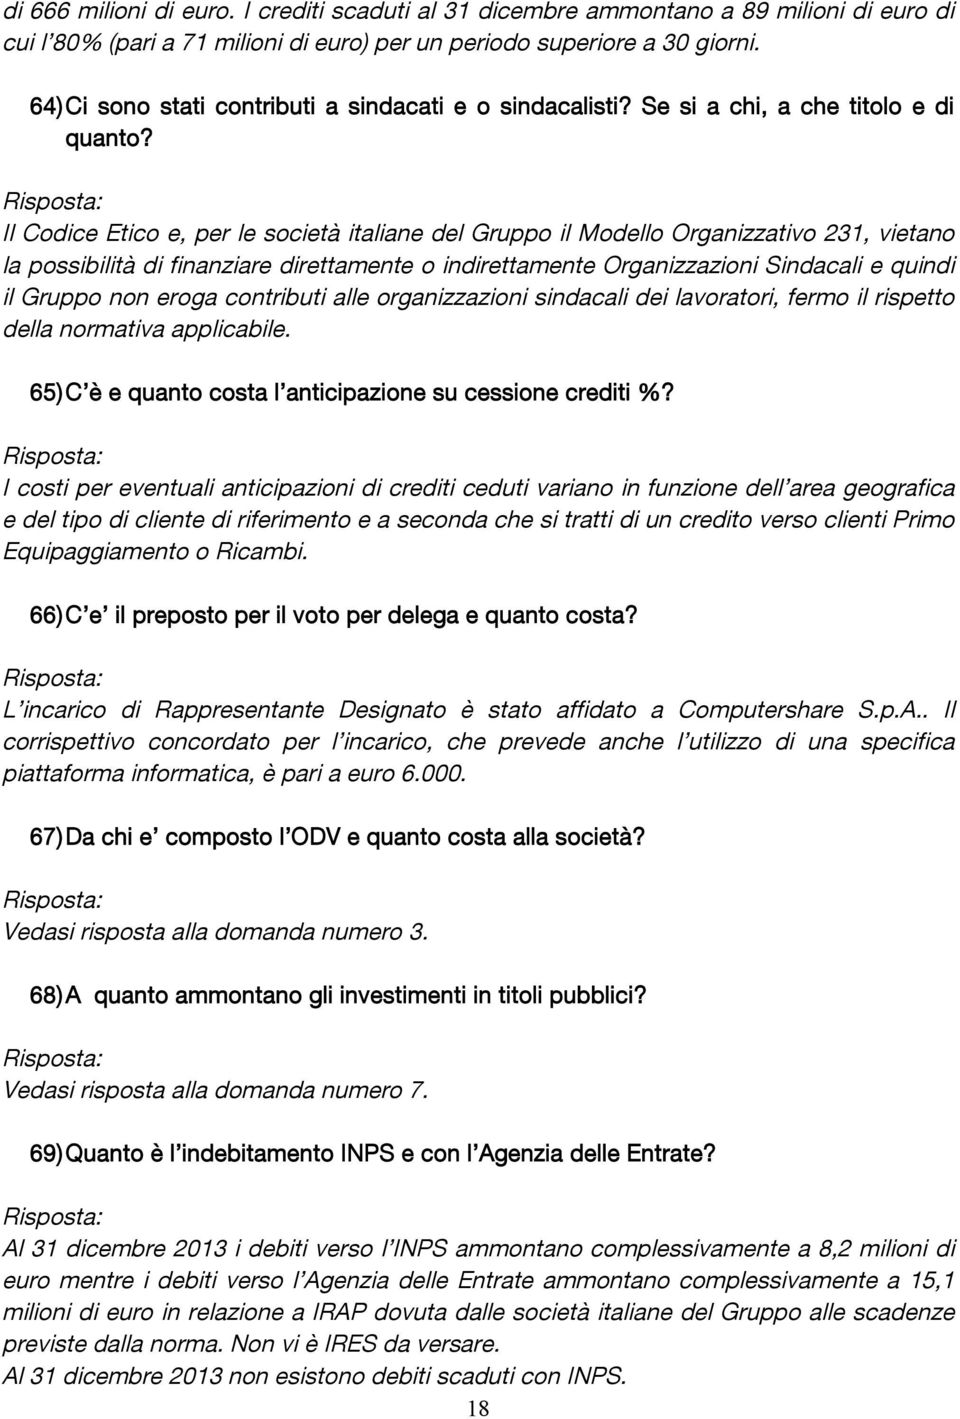 Il Codice Etico e, per le società italiane del Gruppo il Modello Organizzativo 231, vietano la possibilità di finanziare direttamente o indirettamente Organizzazioni Sindacali e quindi il Gruppo non